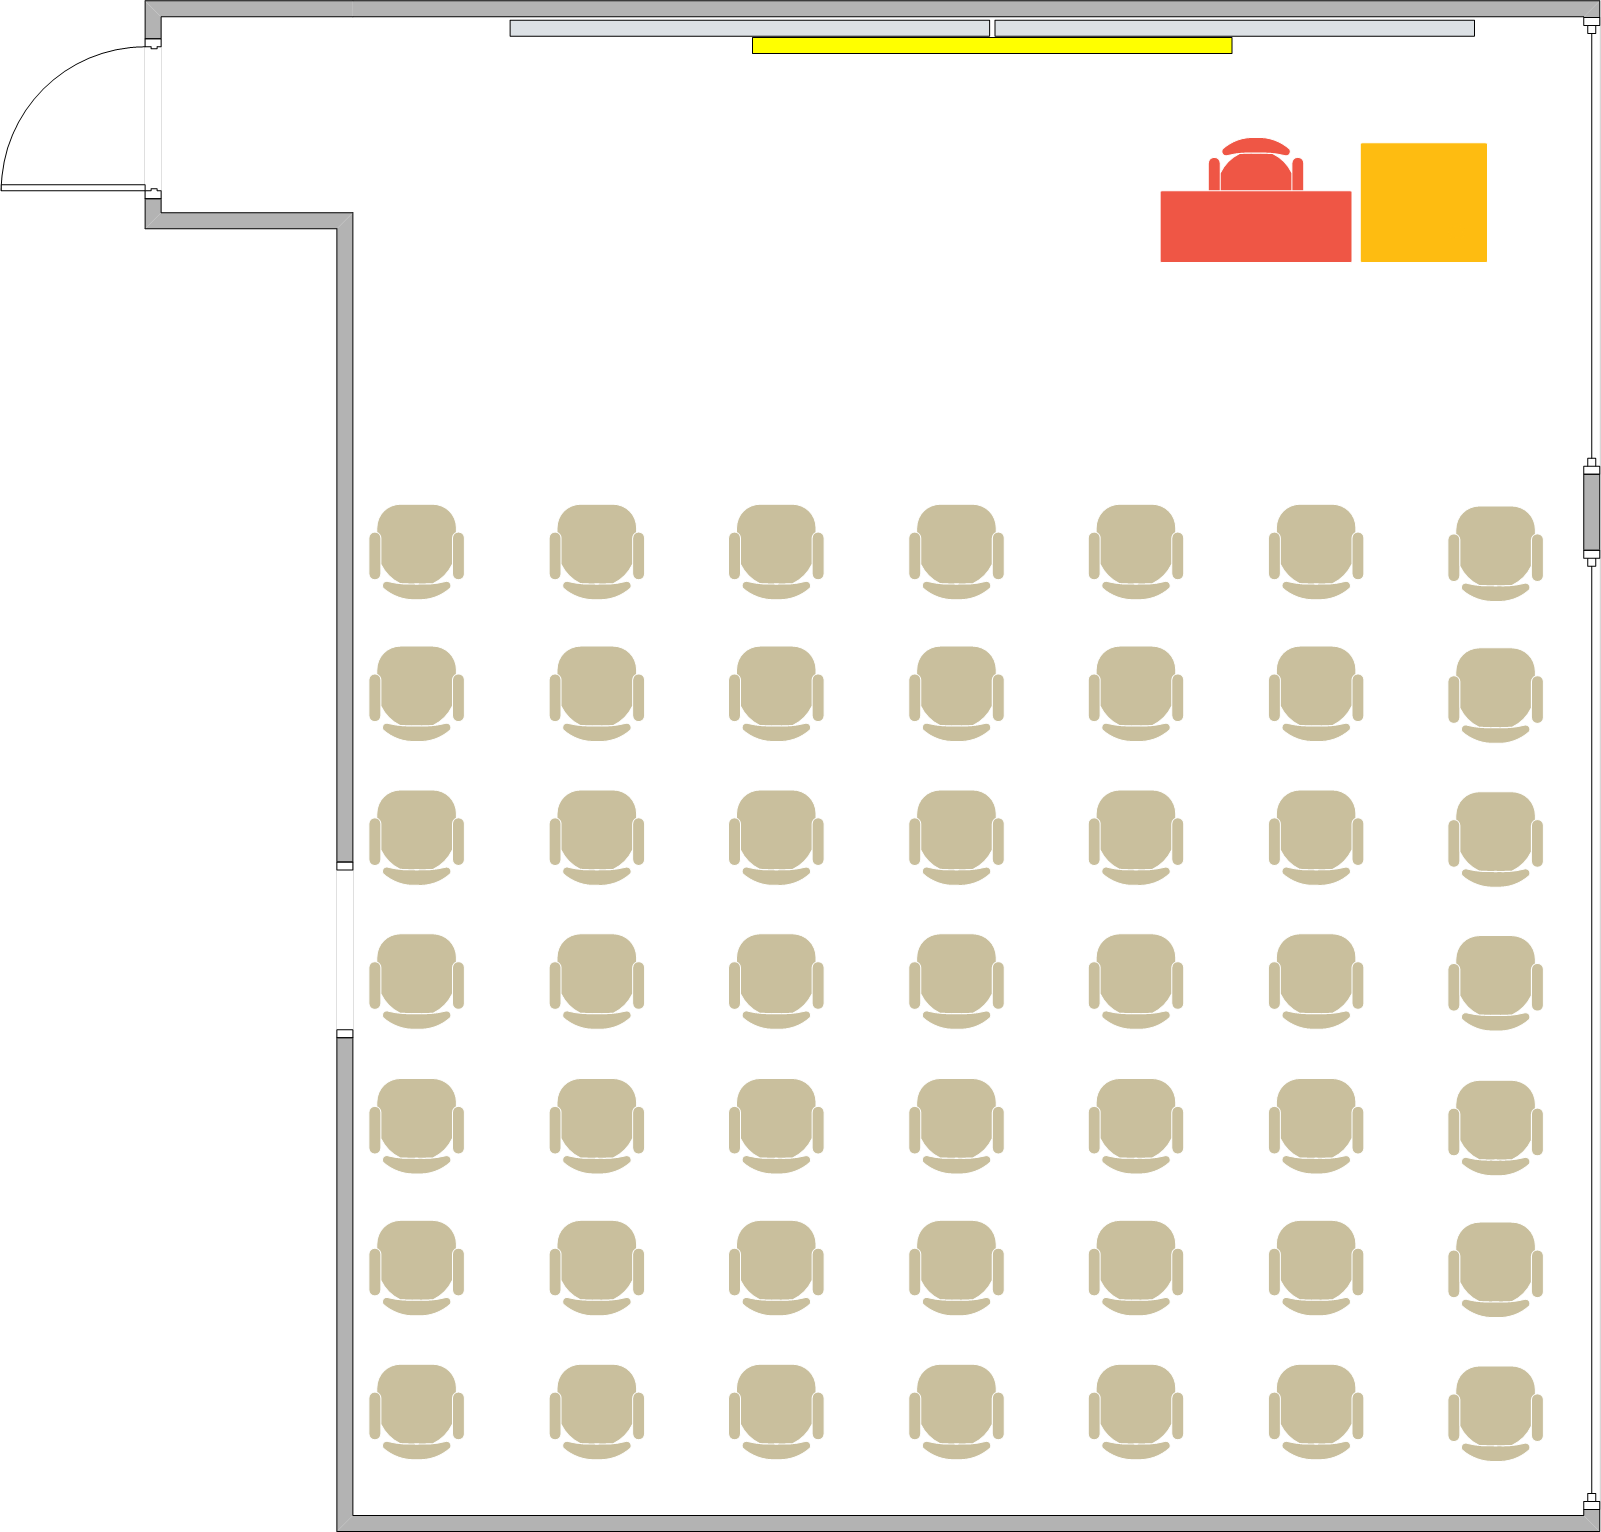 Phelps Hall - 2510 Seating Chart